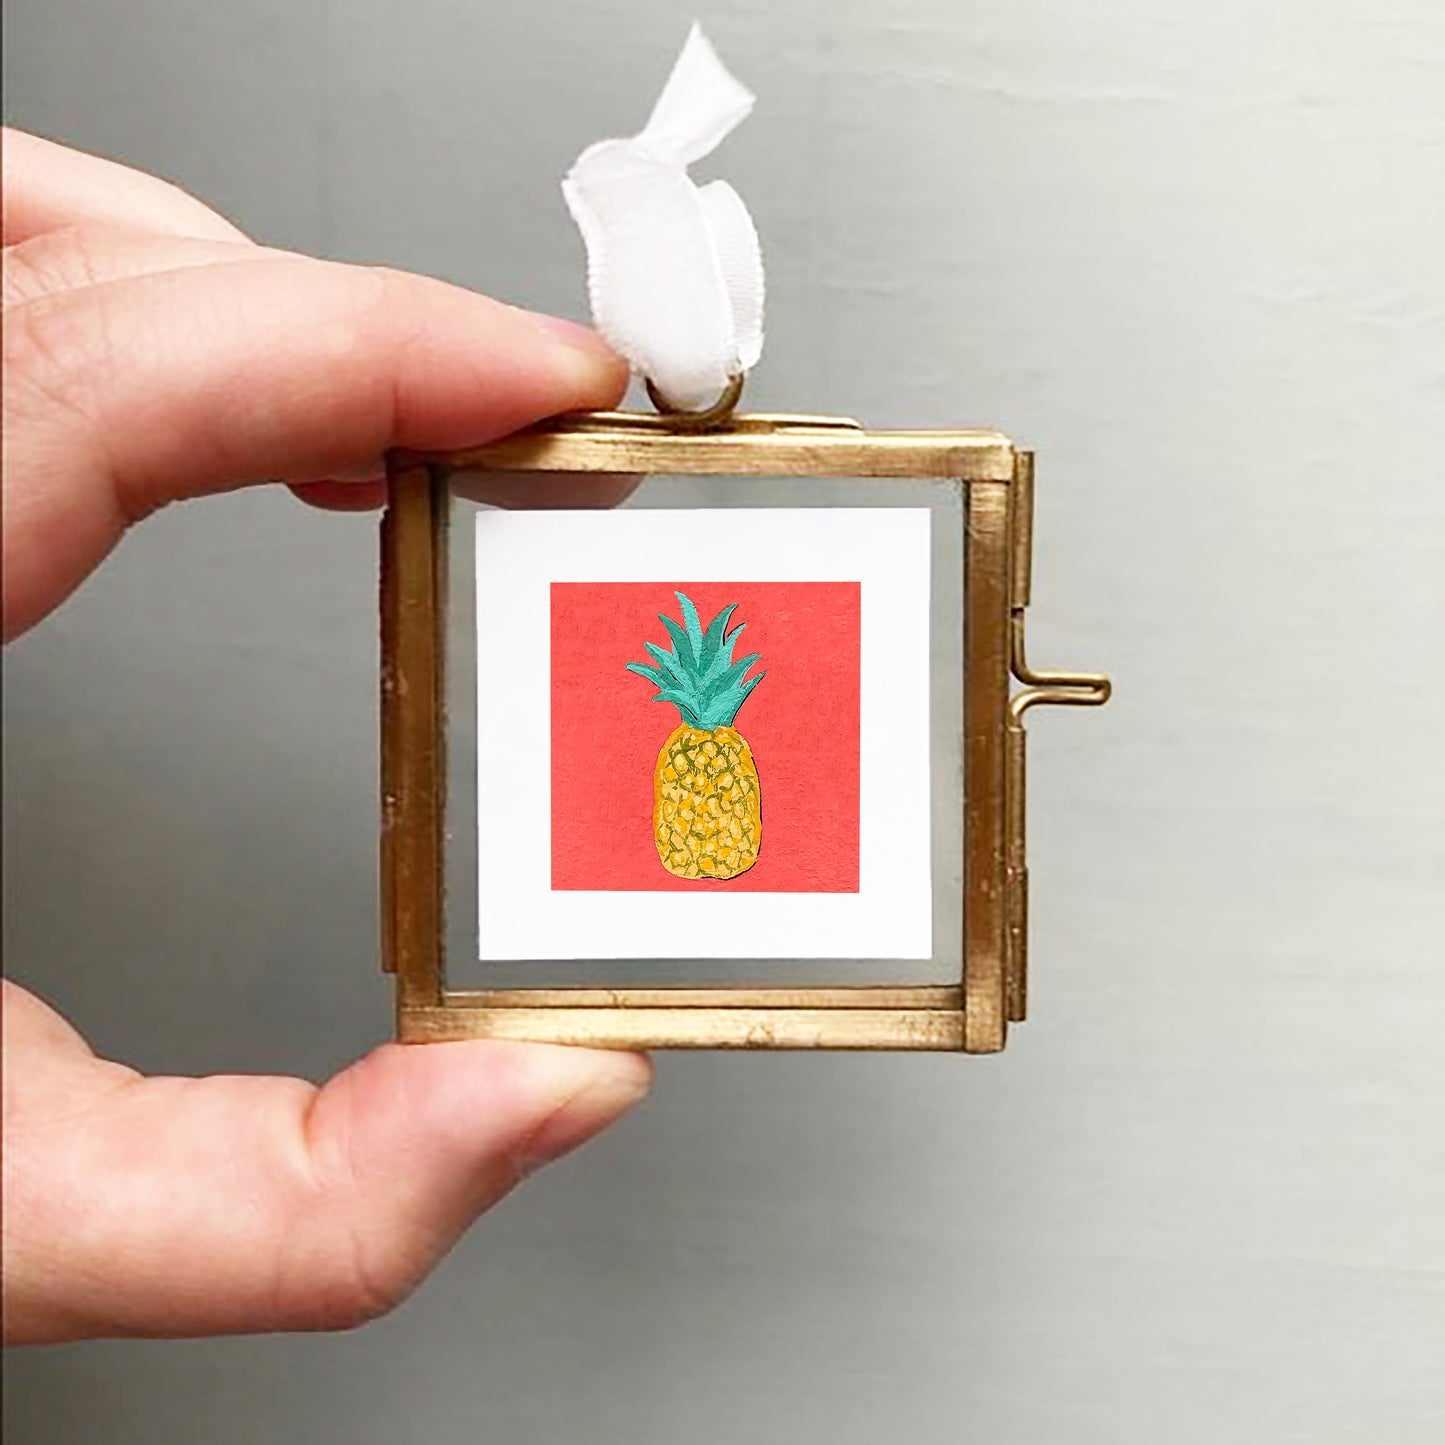 ORIGINAL Mini 1" Pineapple Gouache Original Painting